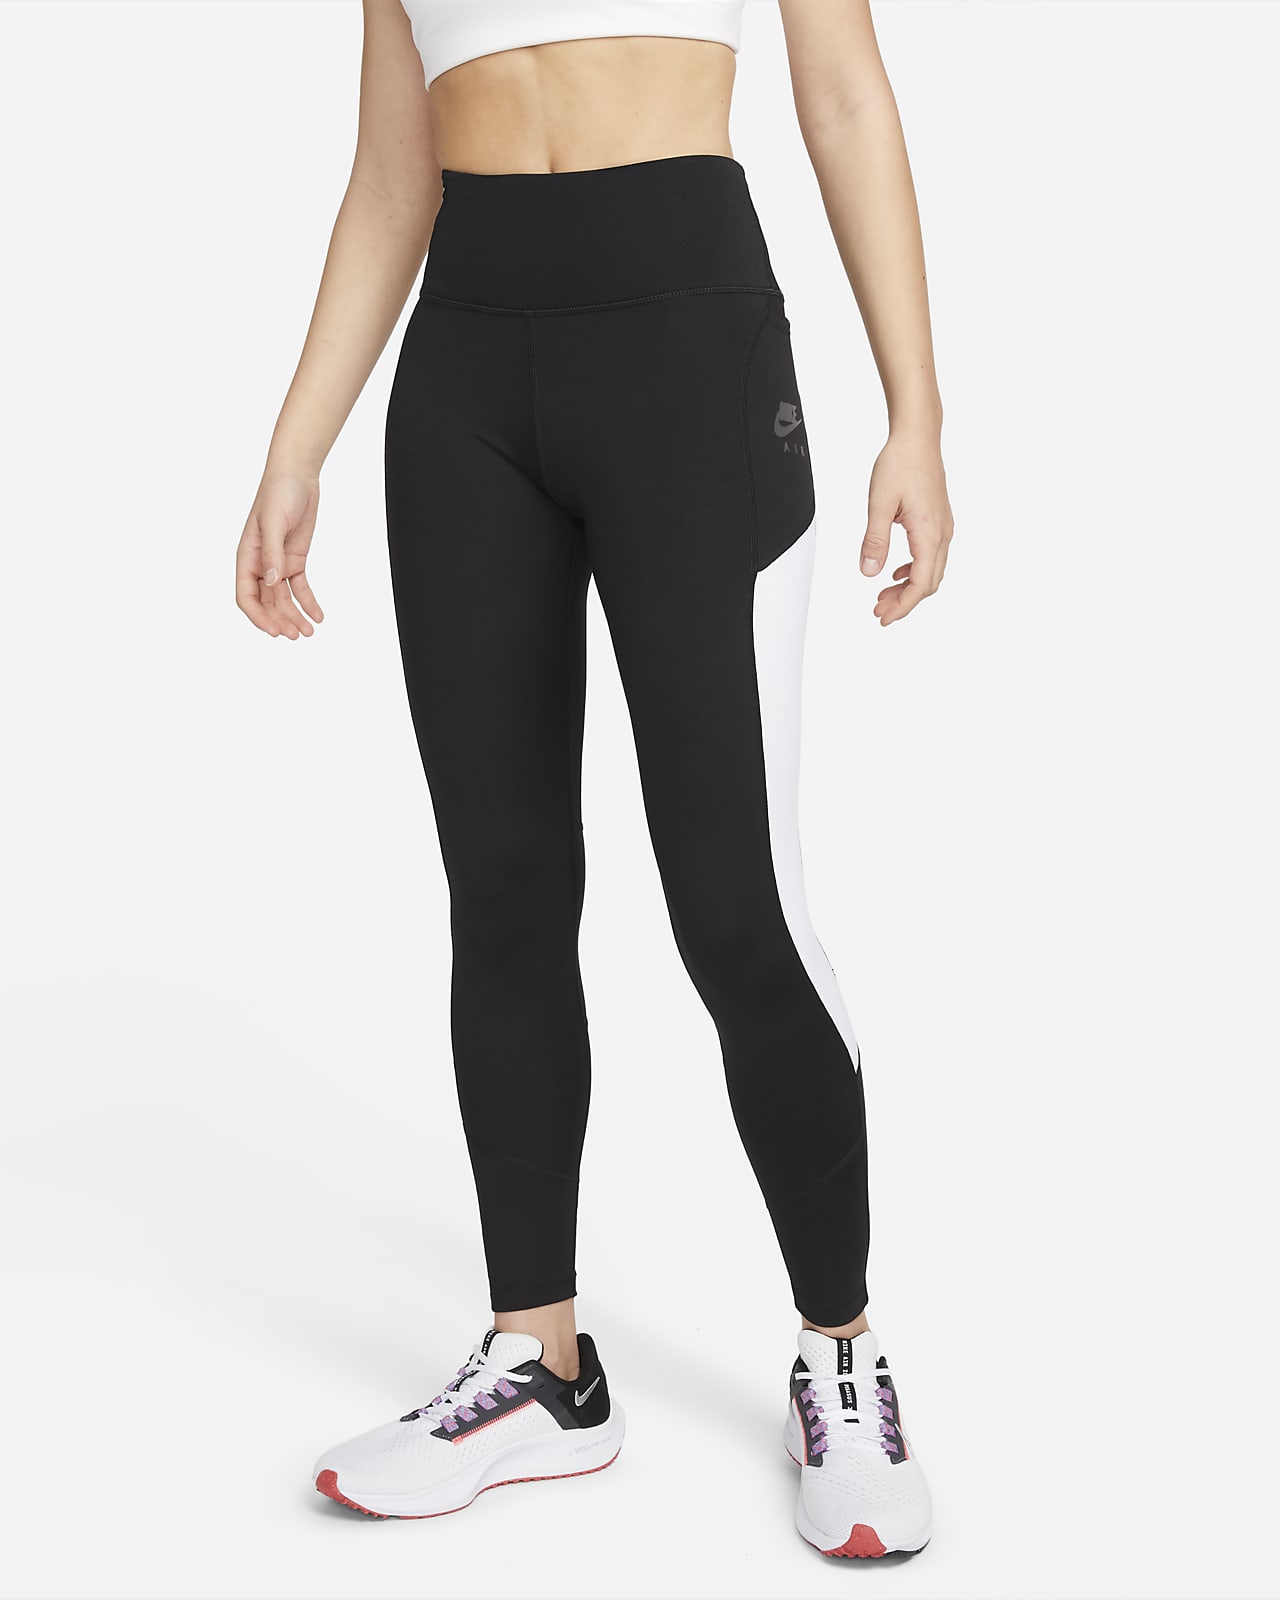 Nike Air Women's 7/8-Length High-Waisted Pocket Running Leggings